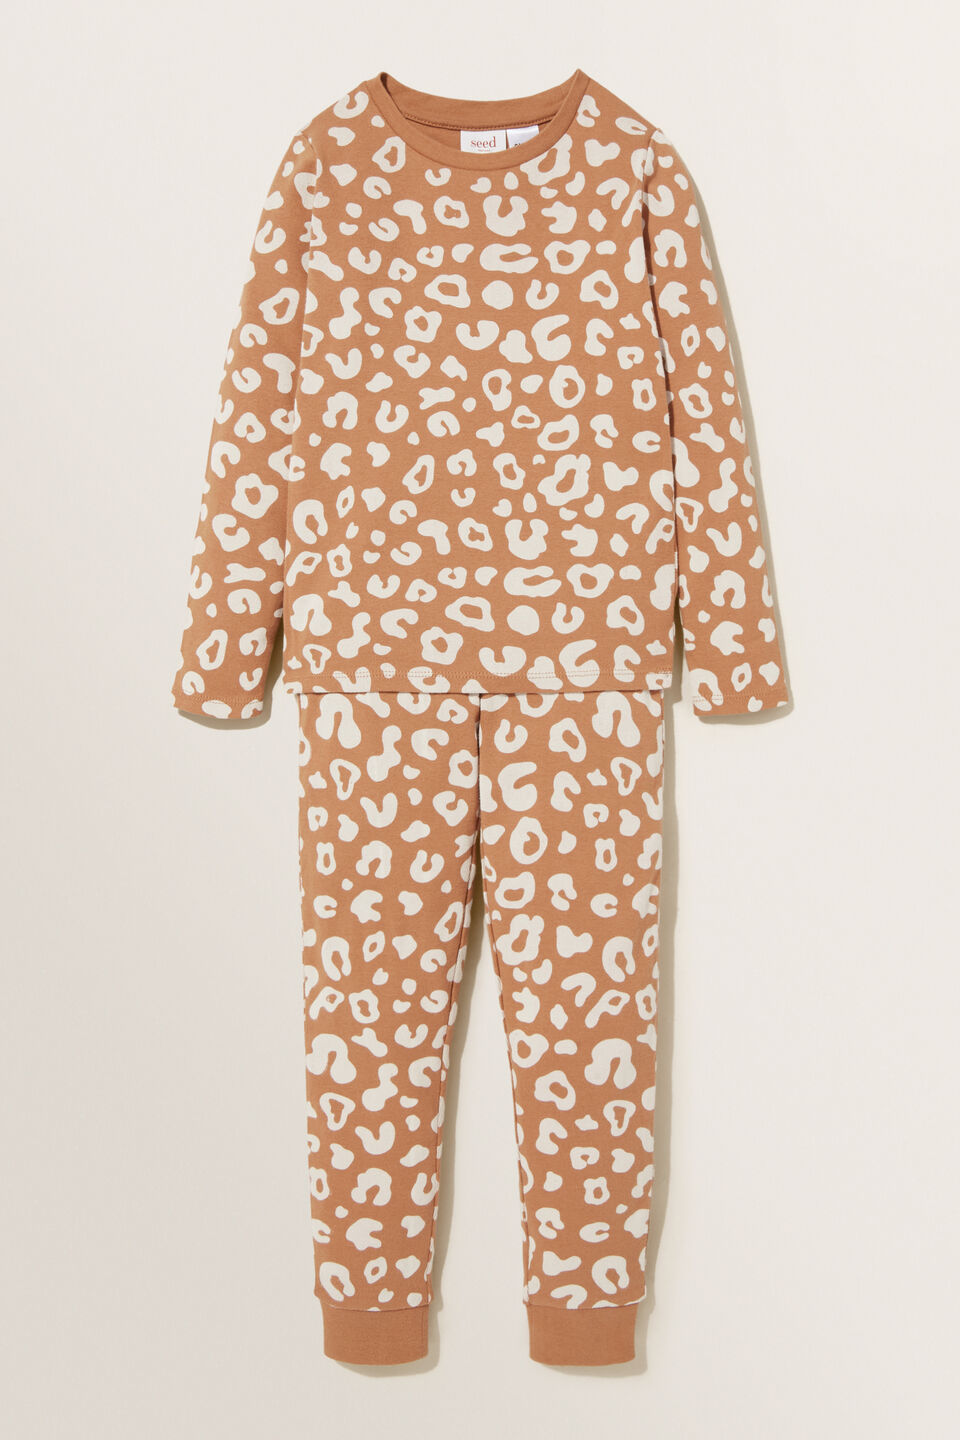 Ocelot Long Sleeve Pyjamas  Ginger